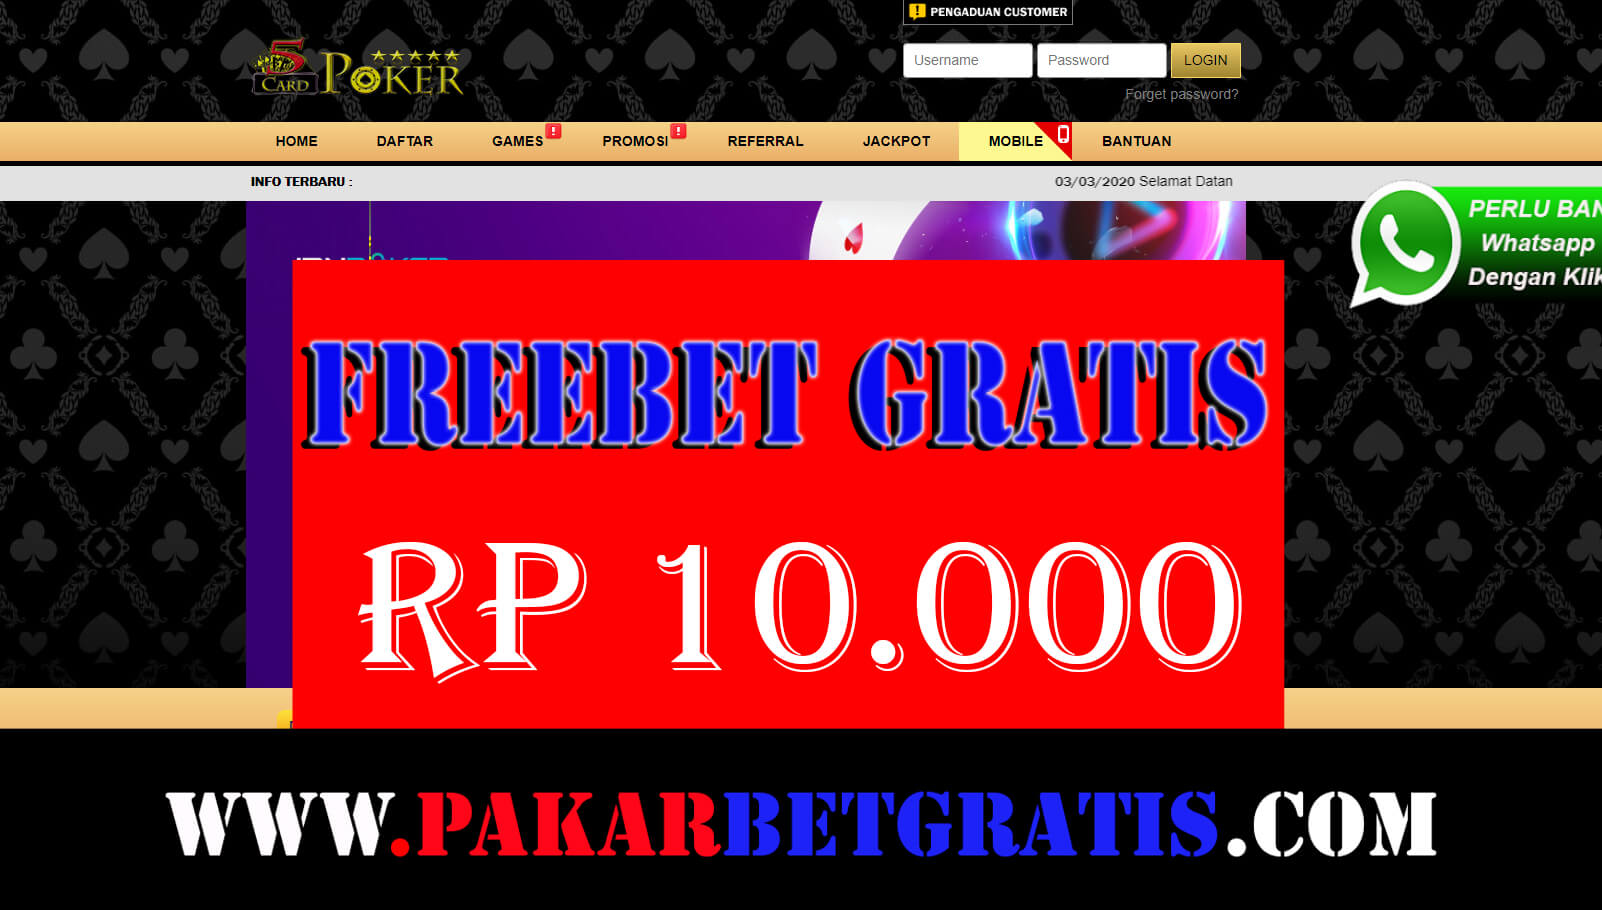 Freebet Gratis 5cardpoker Rp 10.000 Tanpa deposit